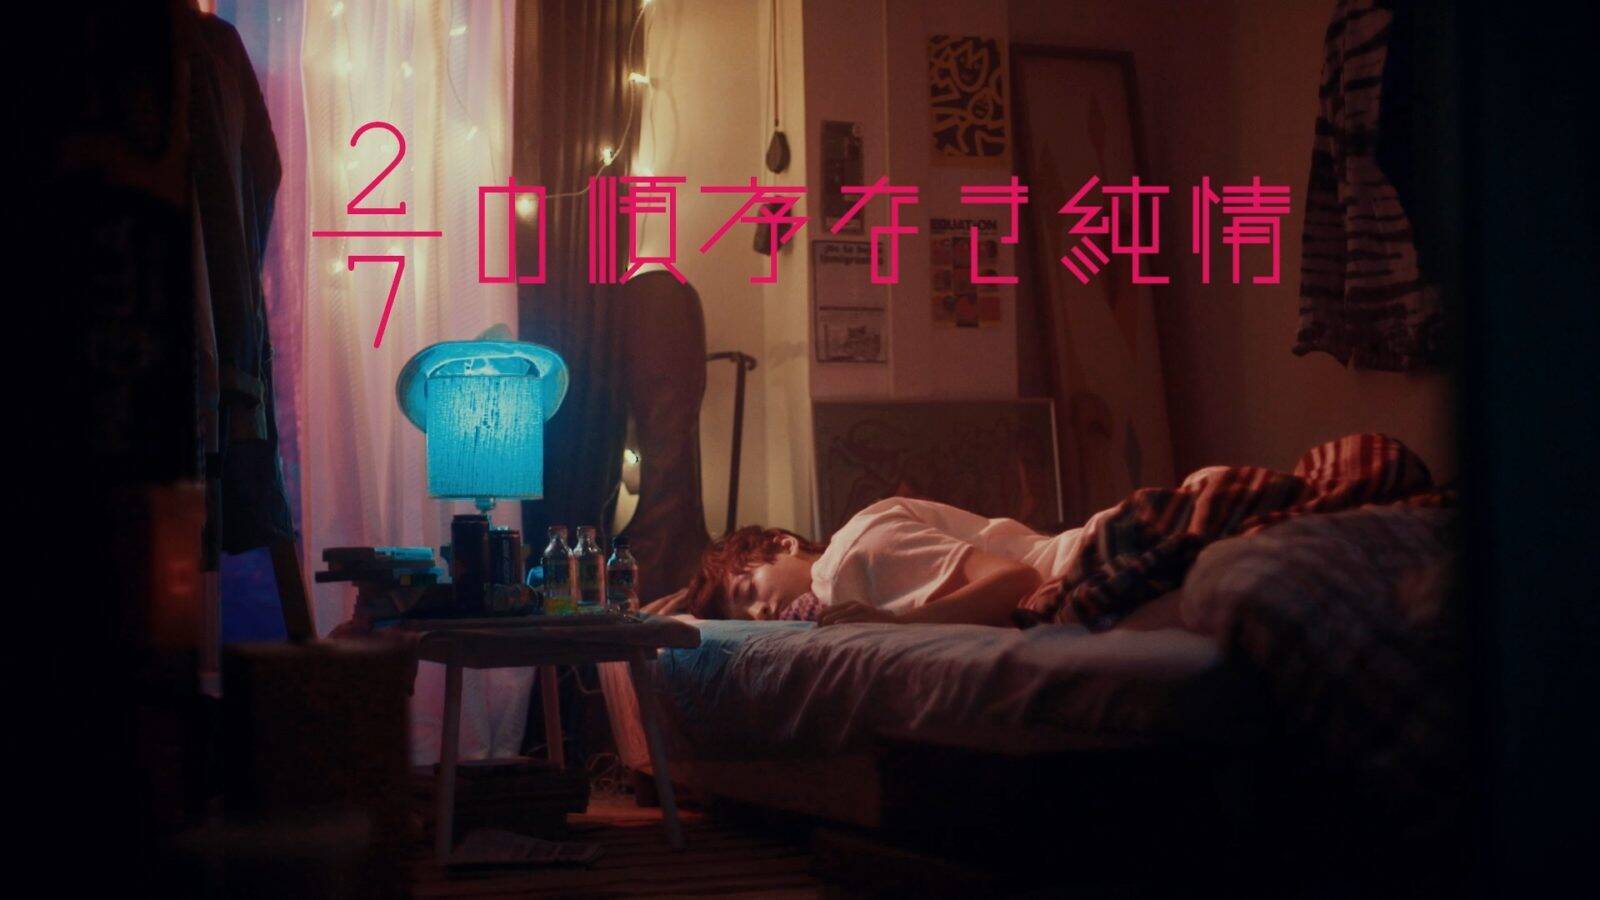 小関裕太出演による Greeeen 2 7の順序なき純情 ミュージックビデオ公開 19年10月24日 エキサイトニュース